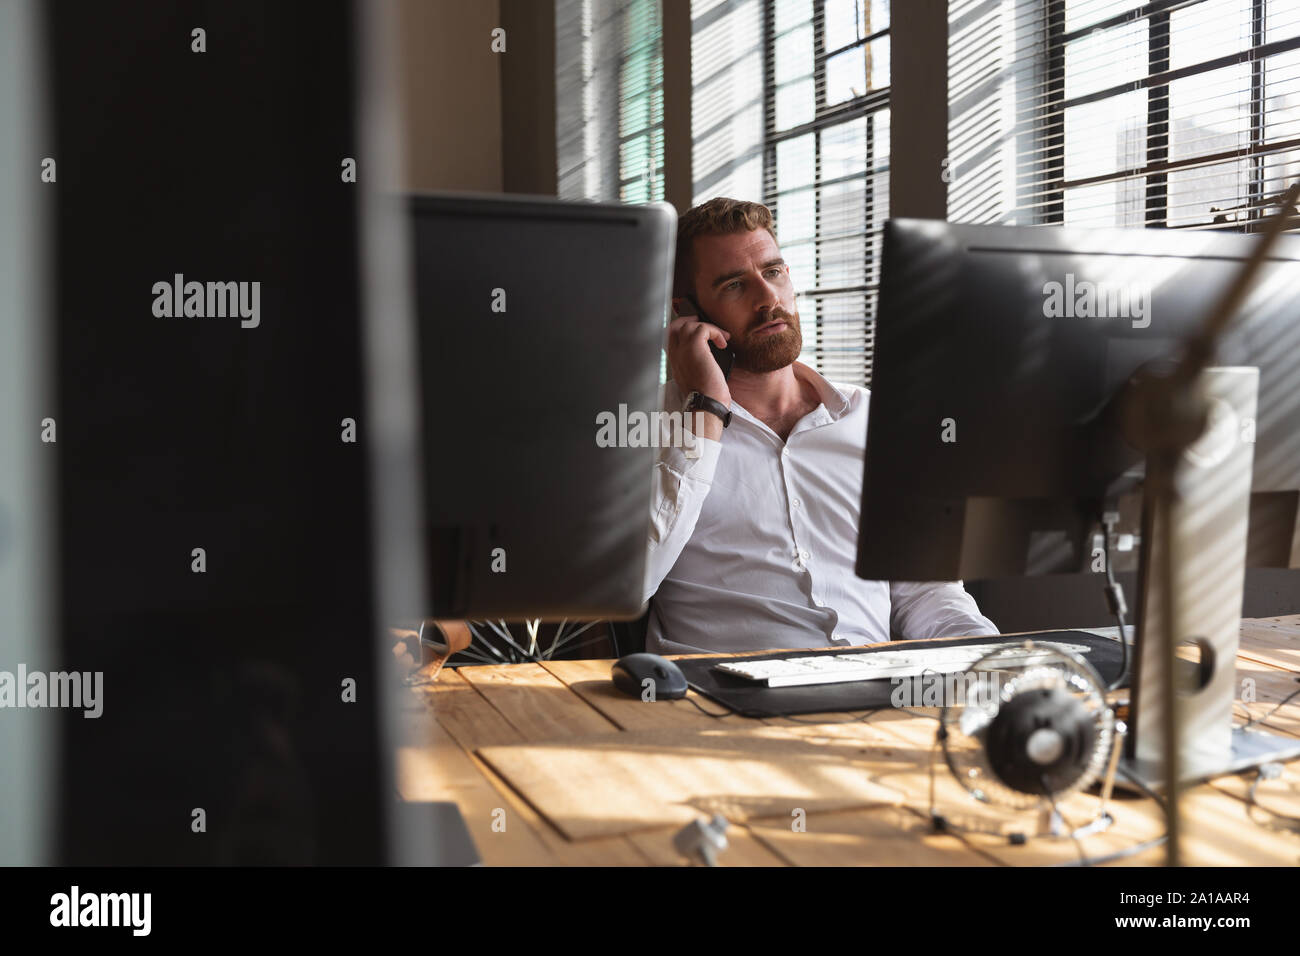 Young Creative Professional Mann am Telefon in einer sonnenbeschienenen Büro Stockfoto